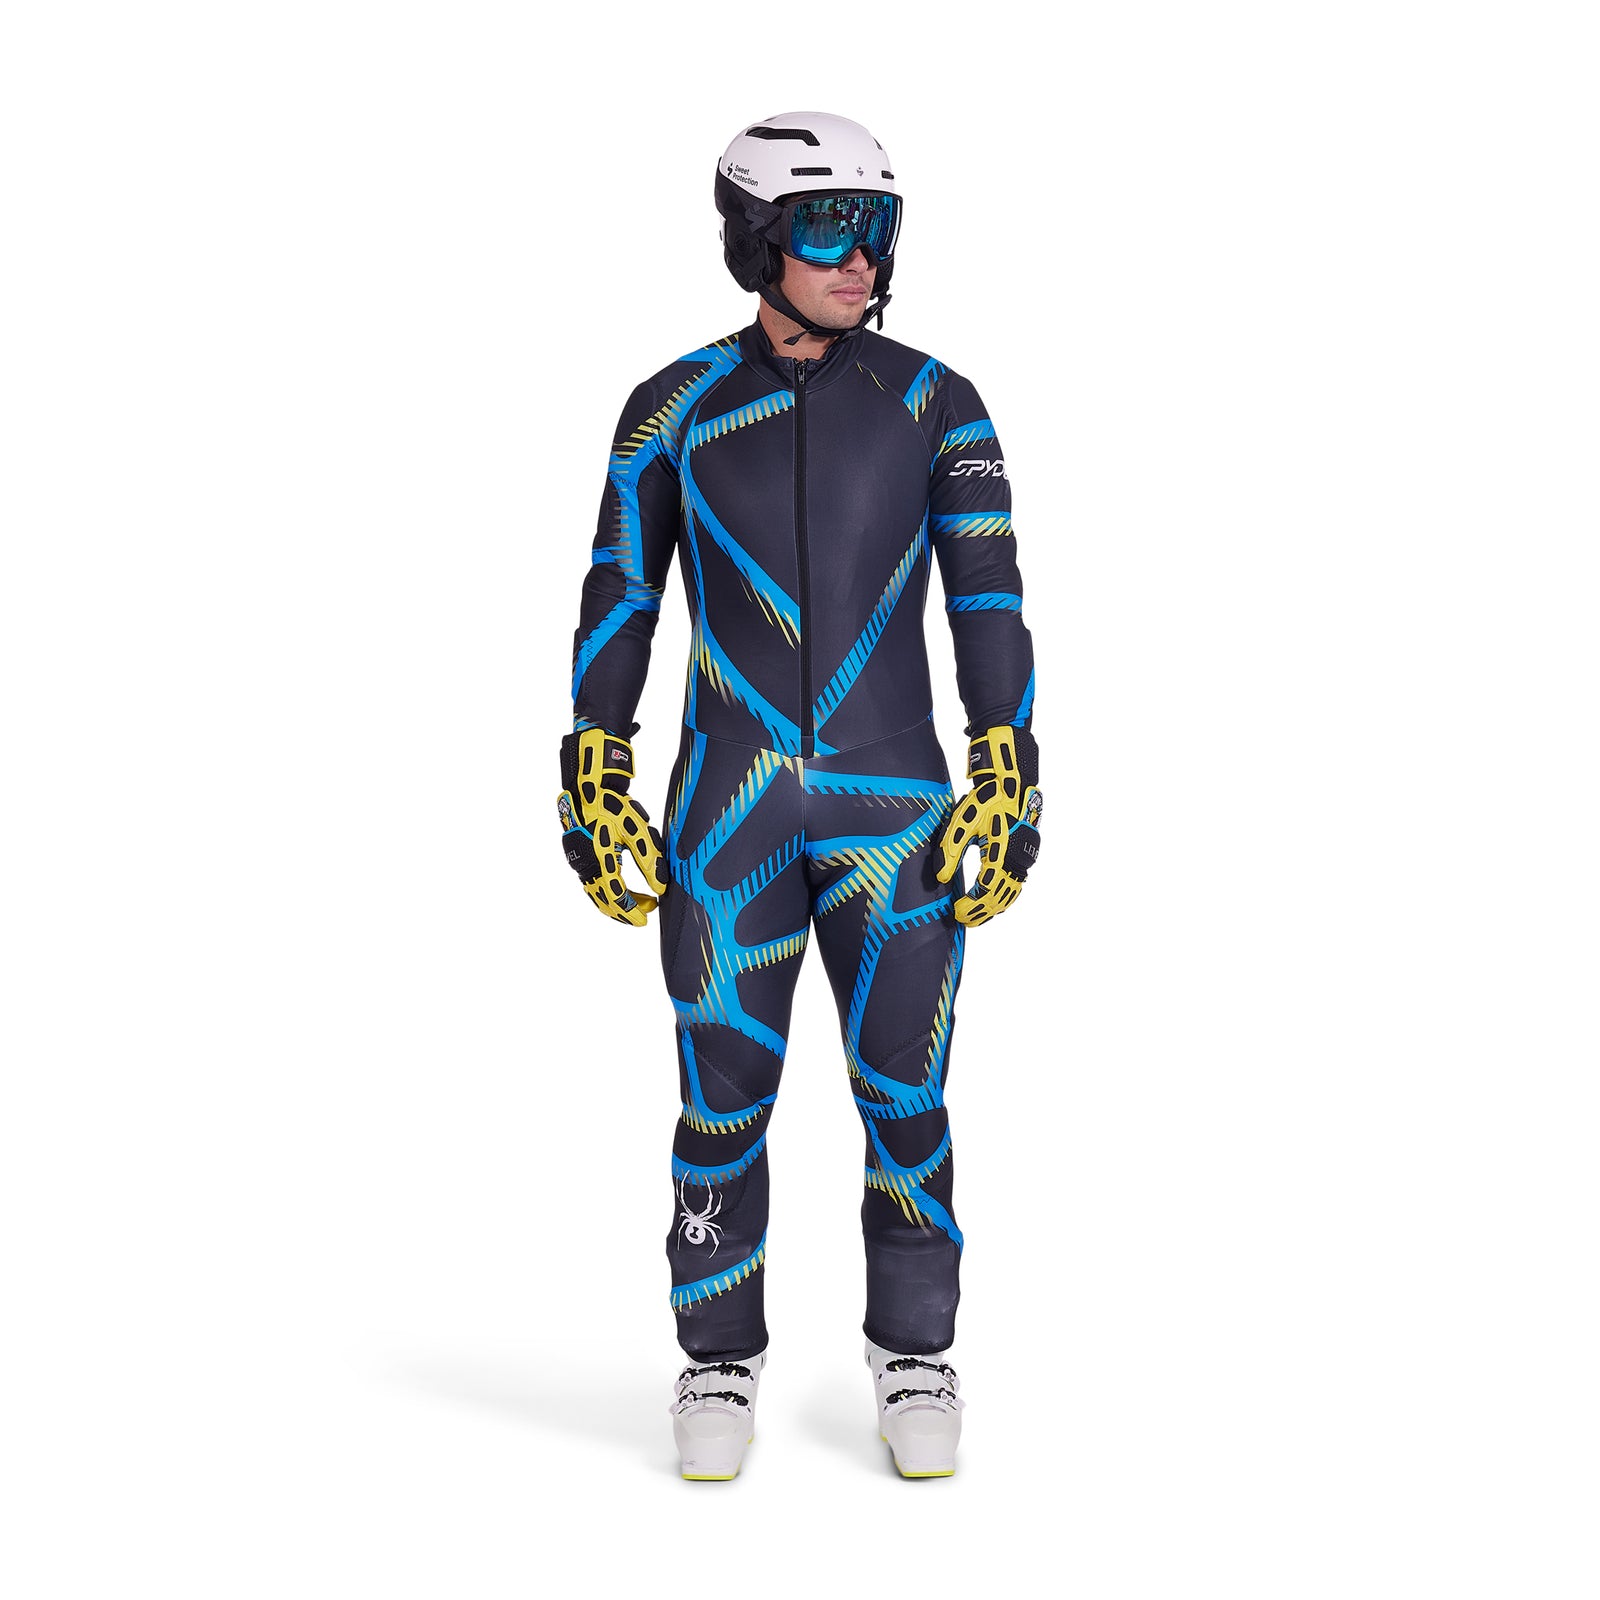 Spyder Performance GS Race Suit - Blár